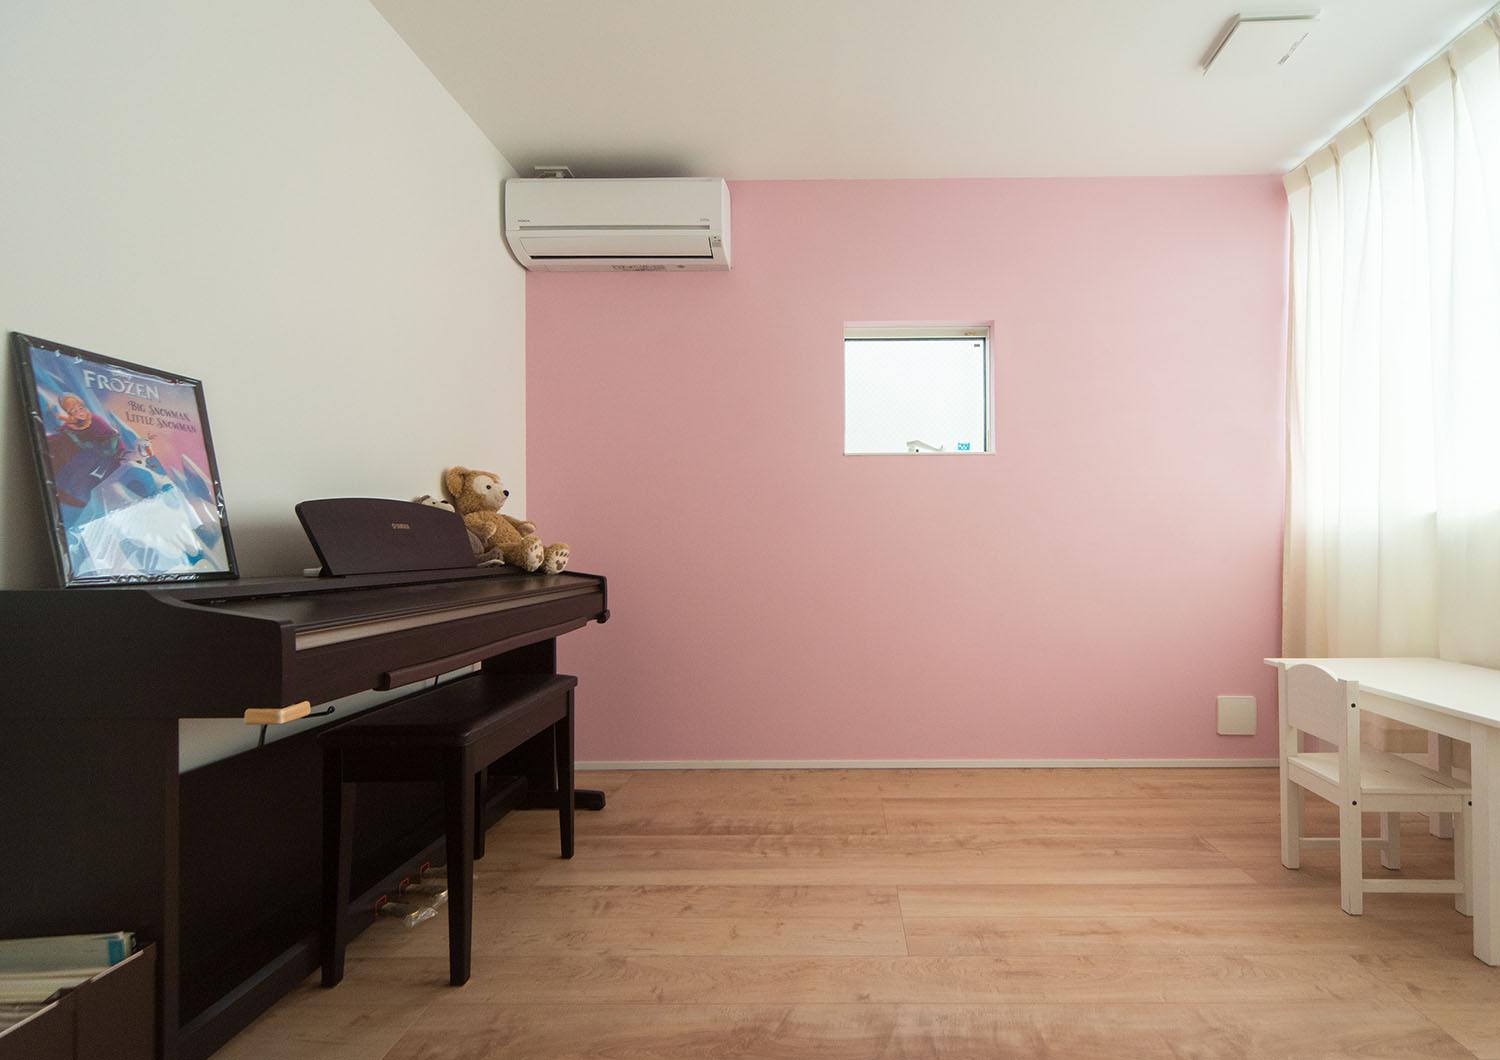 ピアノが置かれた、ピンクのアクセントクロスに小さな窓が取り付けられた部屋・デザイン住宅